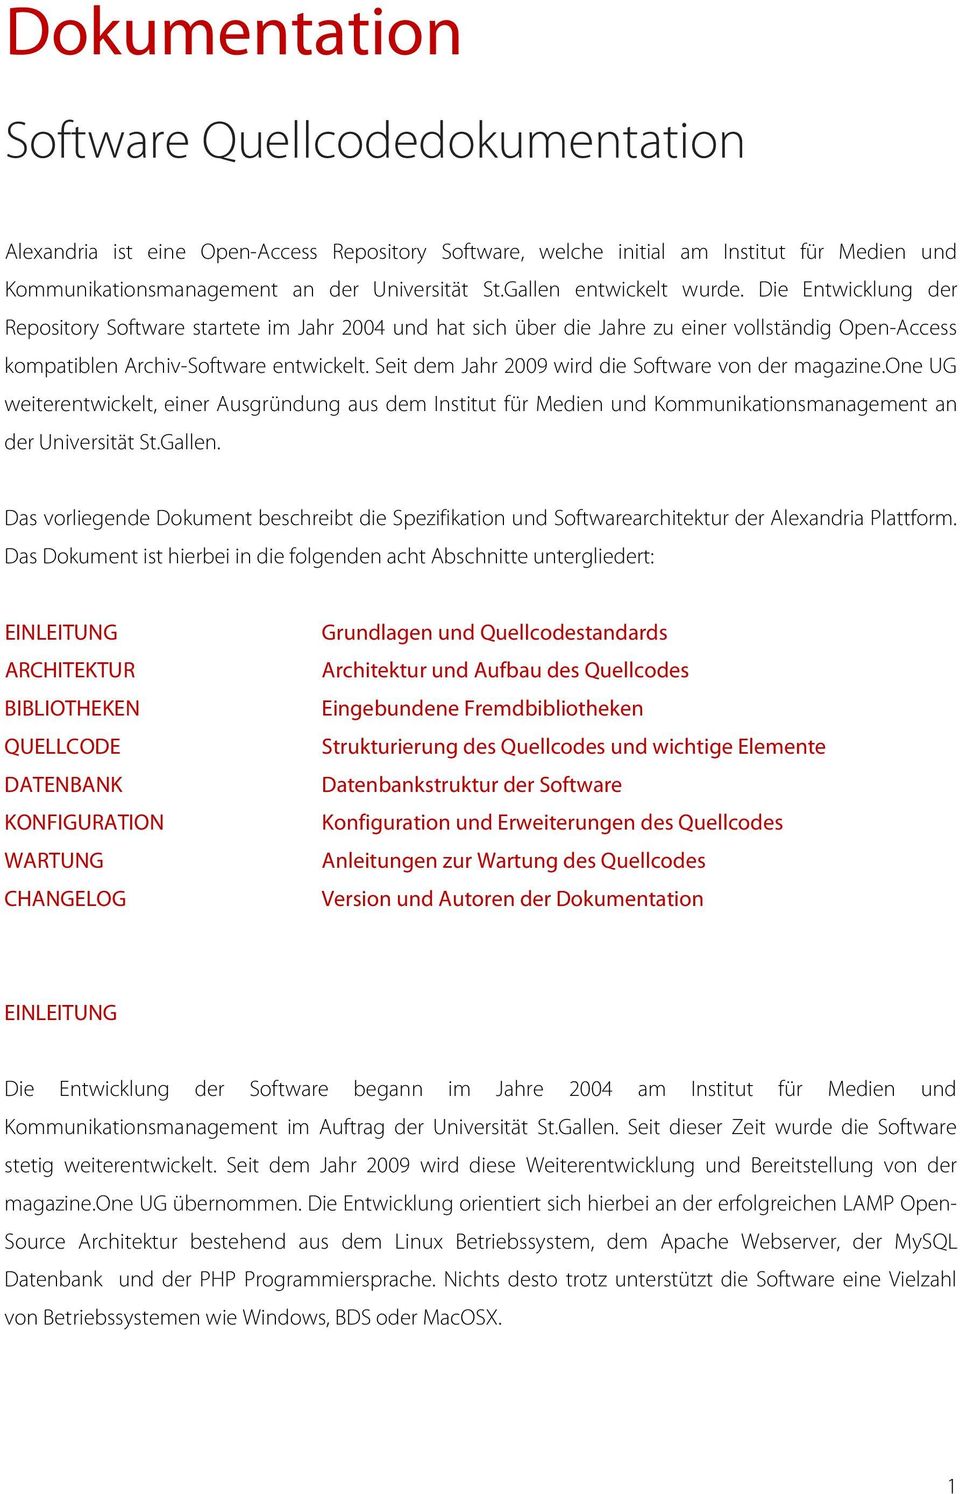 Seit dem Jahr 2009 wird die Software von der magazine.one UG weiterentwickelt, einer Ausgründung aus dem Institut für Medien und Kommunikationsmanagement an der Universität St.Gallen.